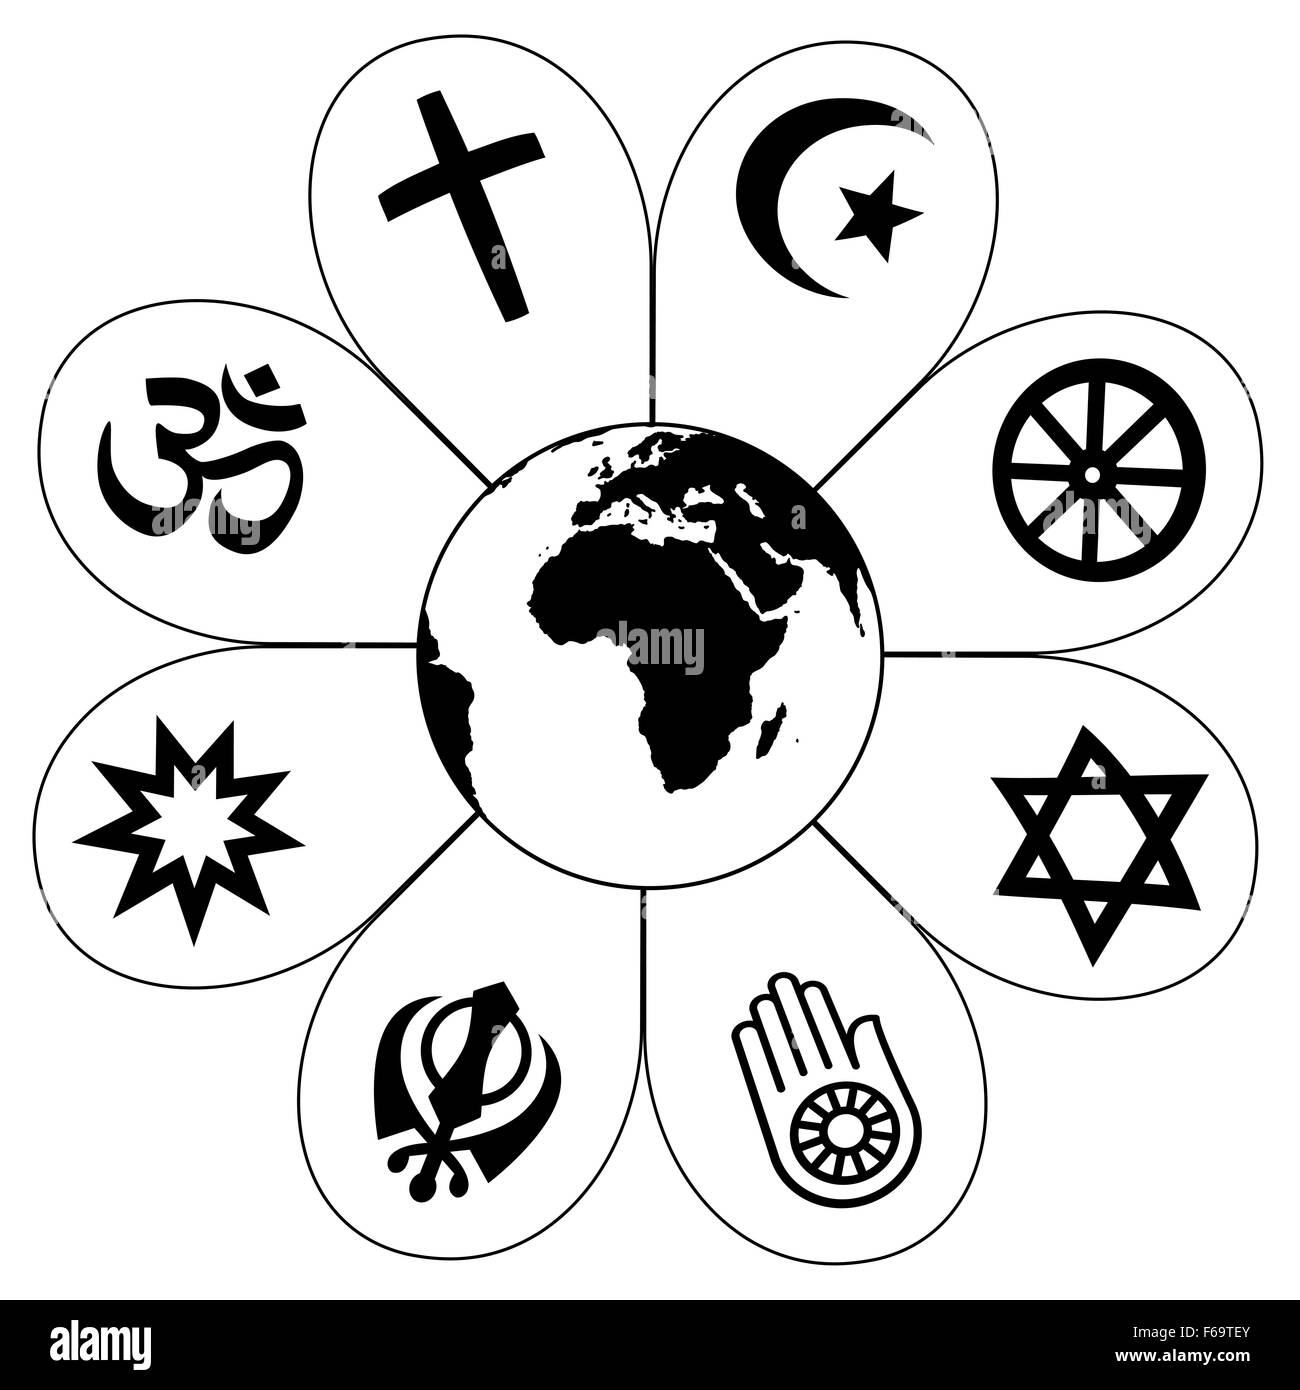 Le religioni del mondo - fiore icona resa dei simboli religiosi e del pianeta terra in centro. Immagine su sfondo bianco. Foto Stock